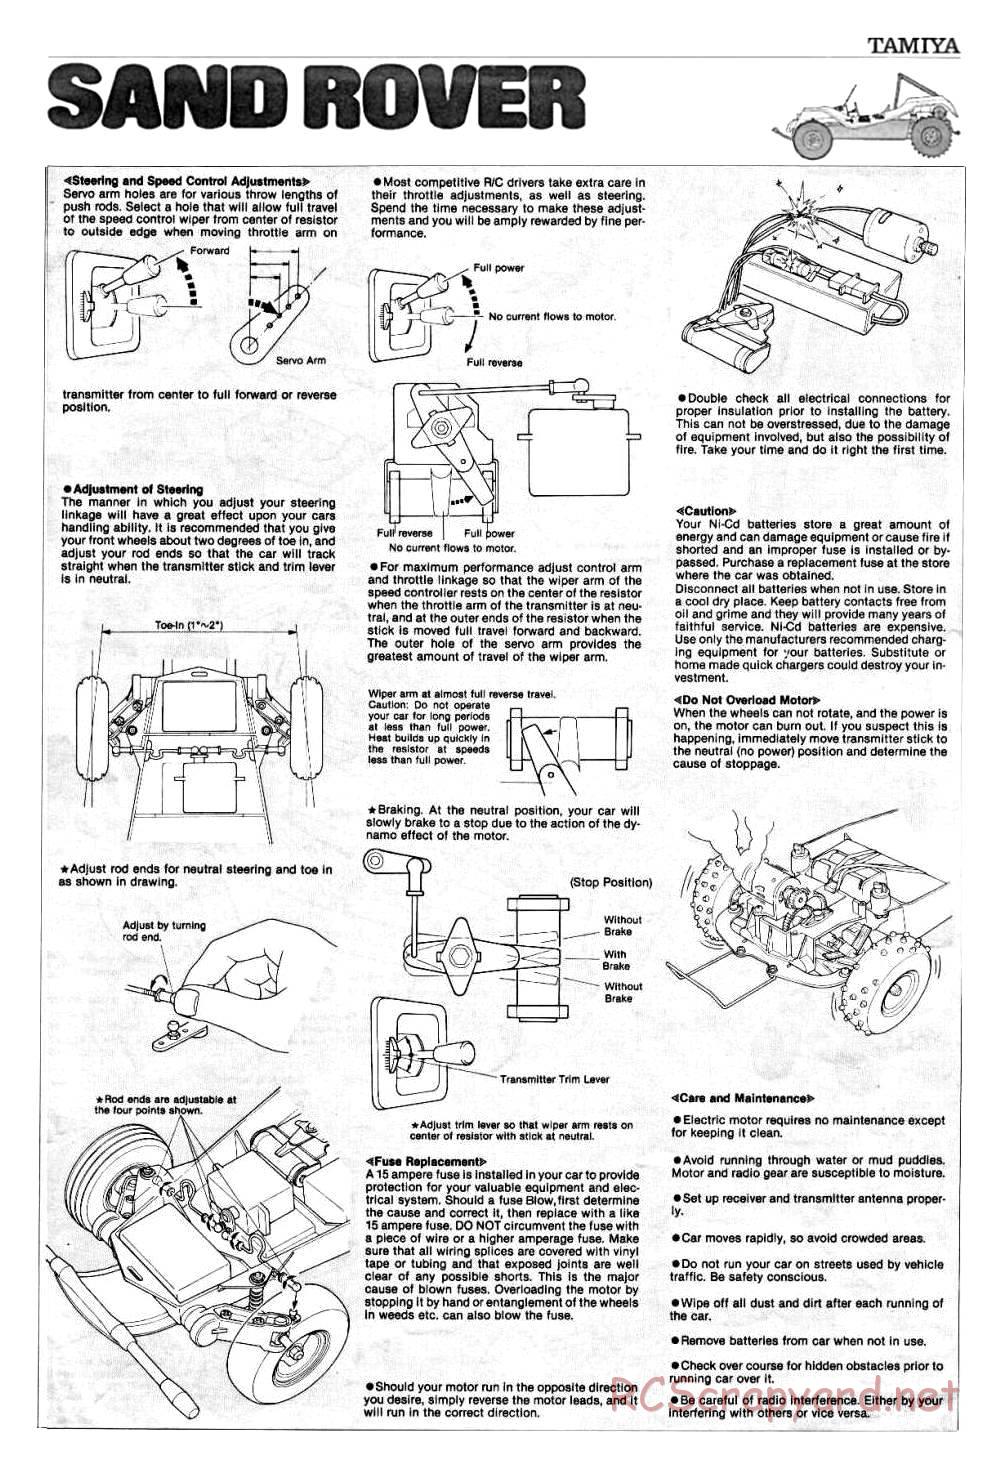 Tamiya - Sand Rover - 58024 - Manual - Page 13